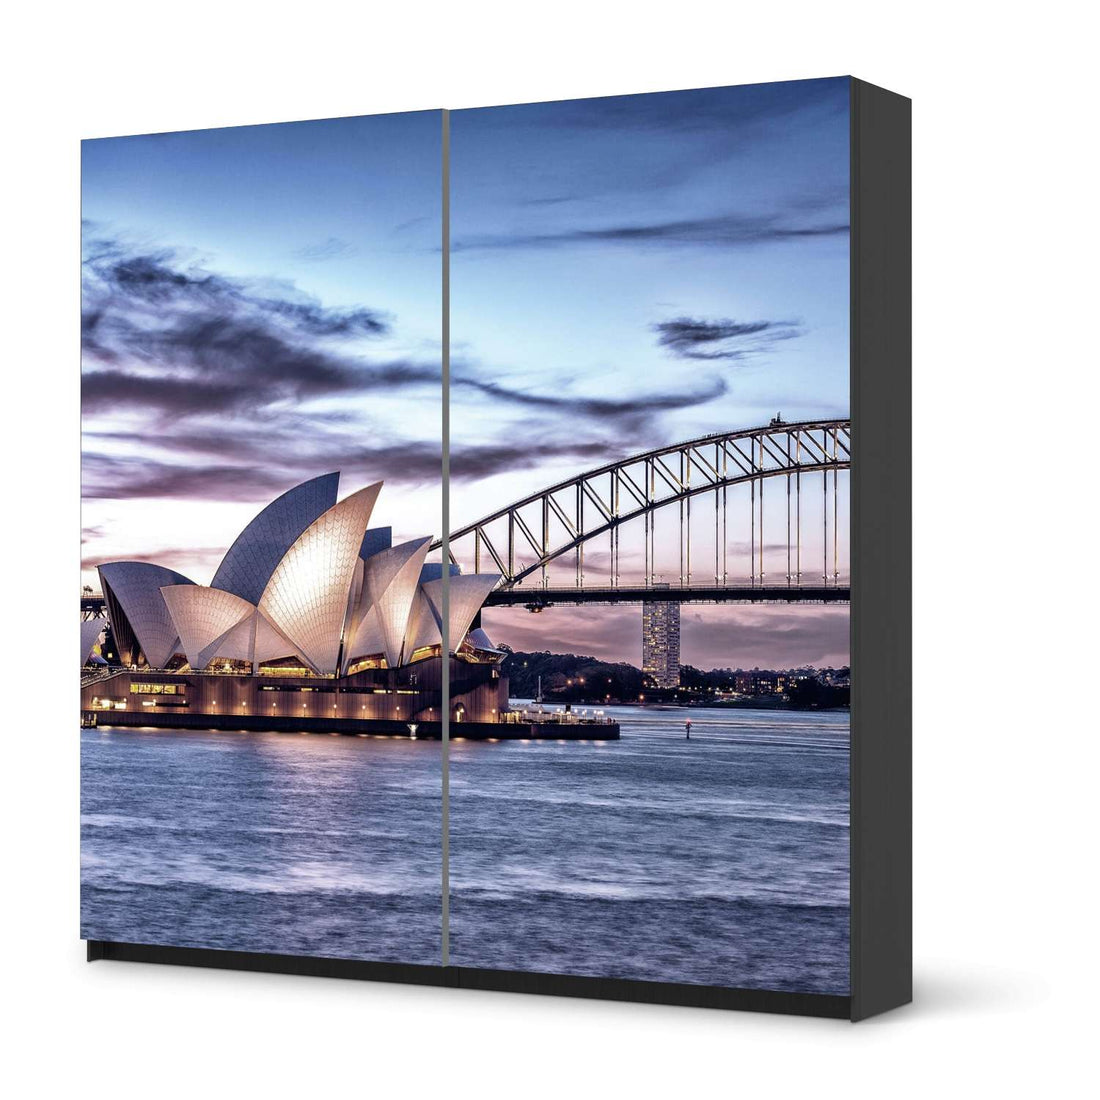 Möbel Klebefolie Sydney - IKEA Pax Schrank 201 cm Höhe - Schiebetür - schwarz